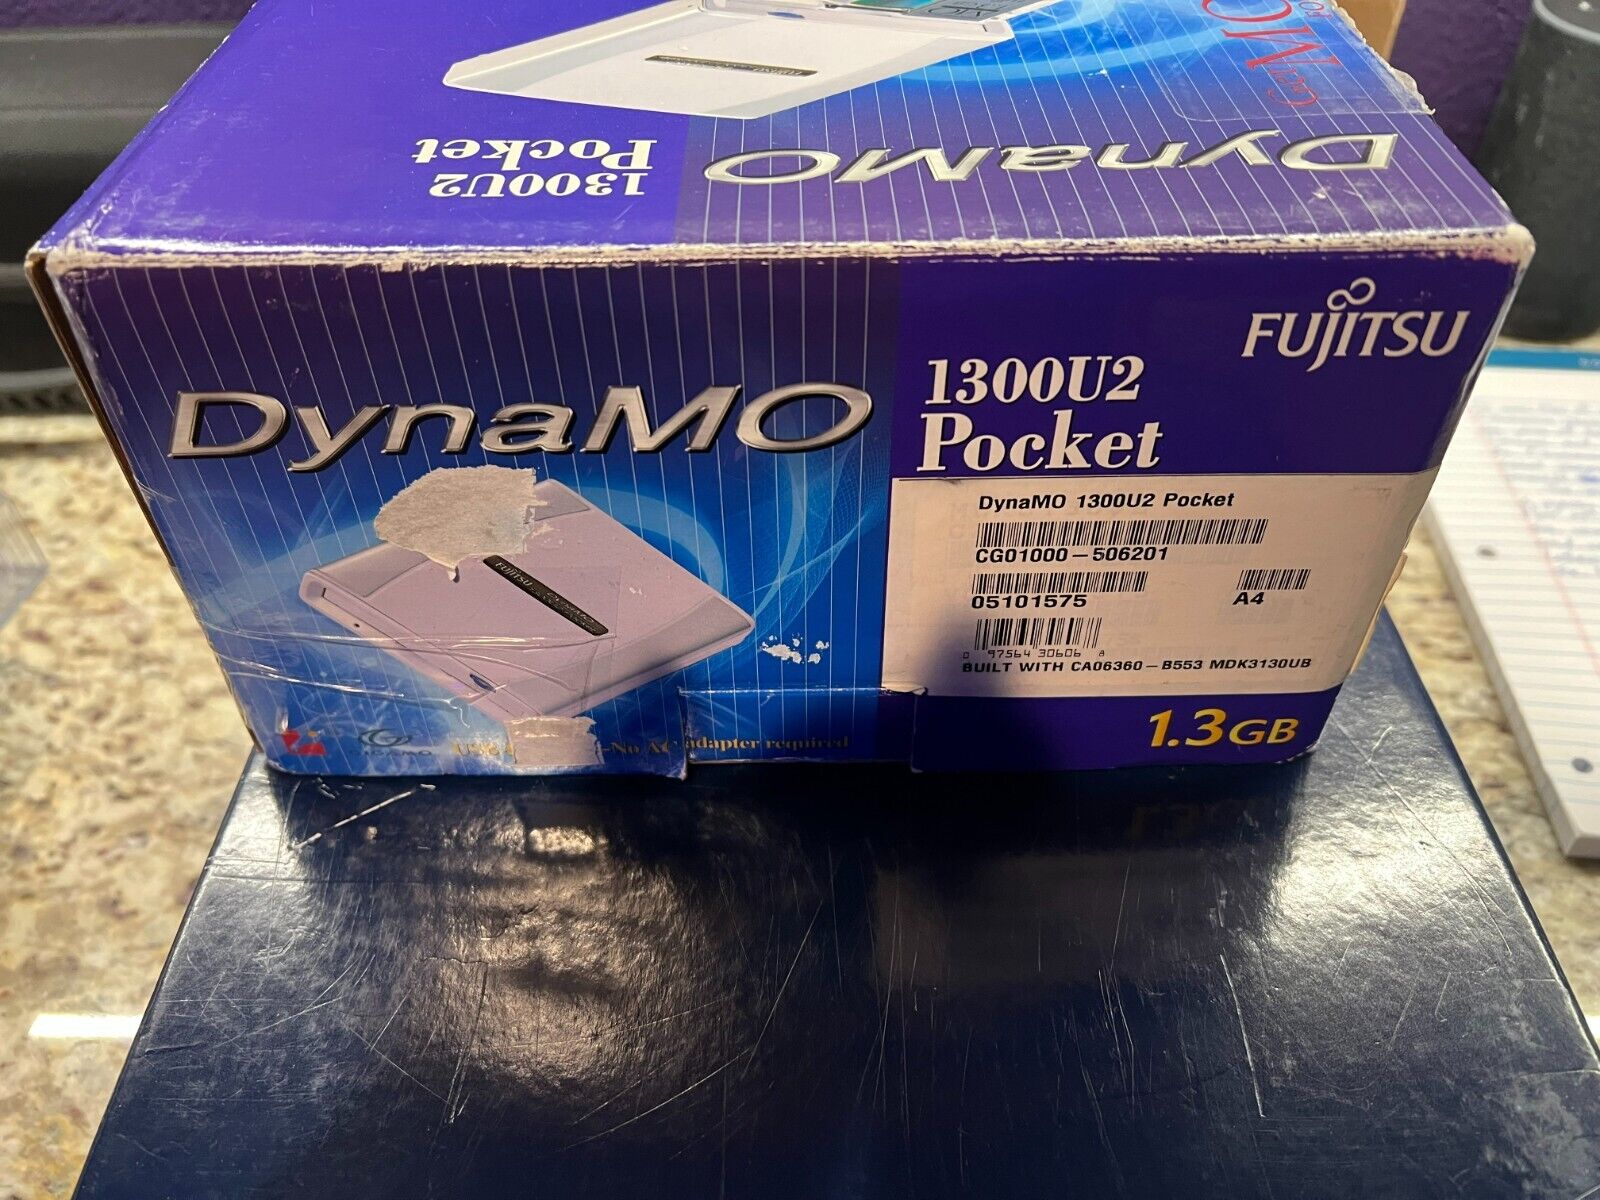 Fujitsu DynaMO 1300U2 Pocket 1.3GB MO disk drive USB Powered Fujitsu CAO6360-B553 - фотография #6